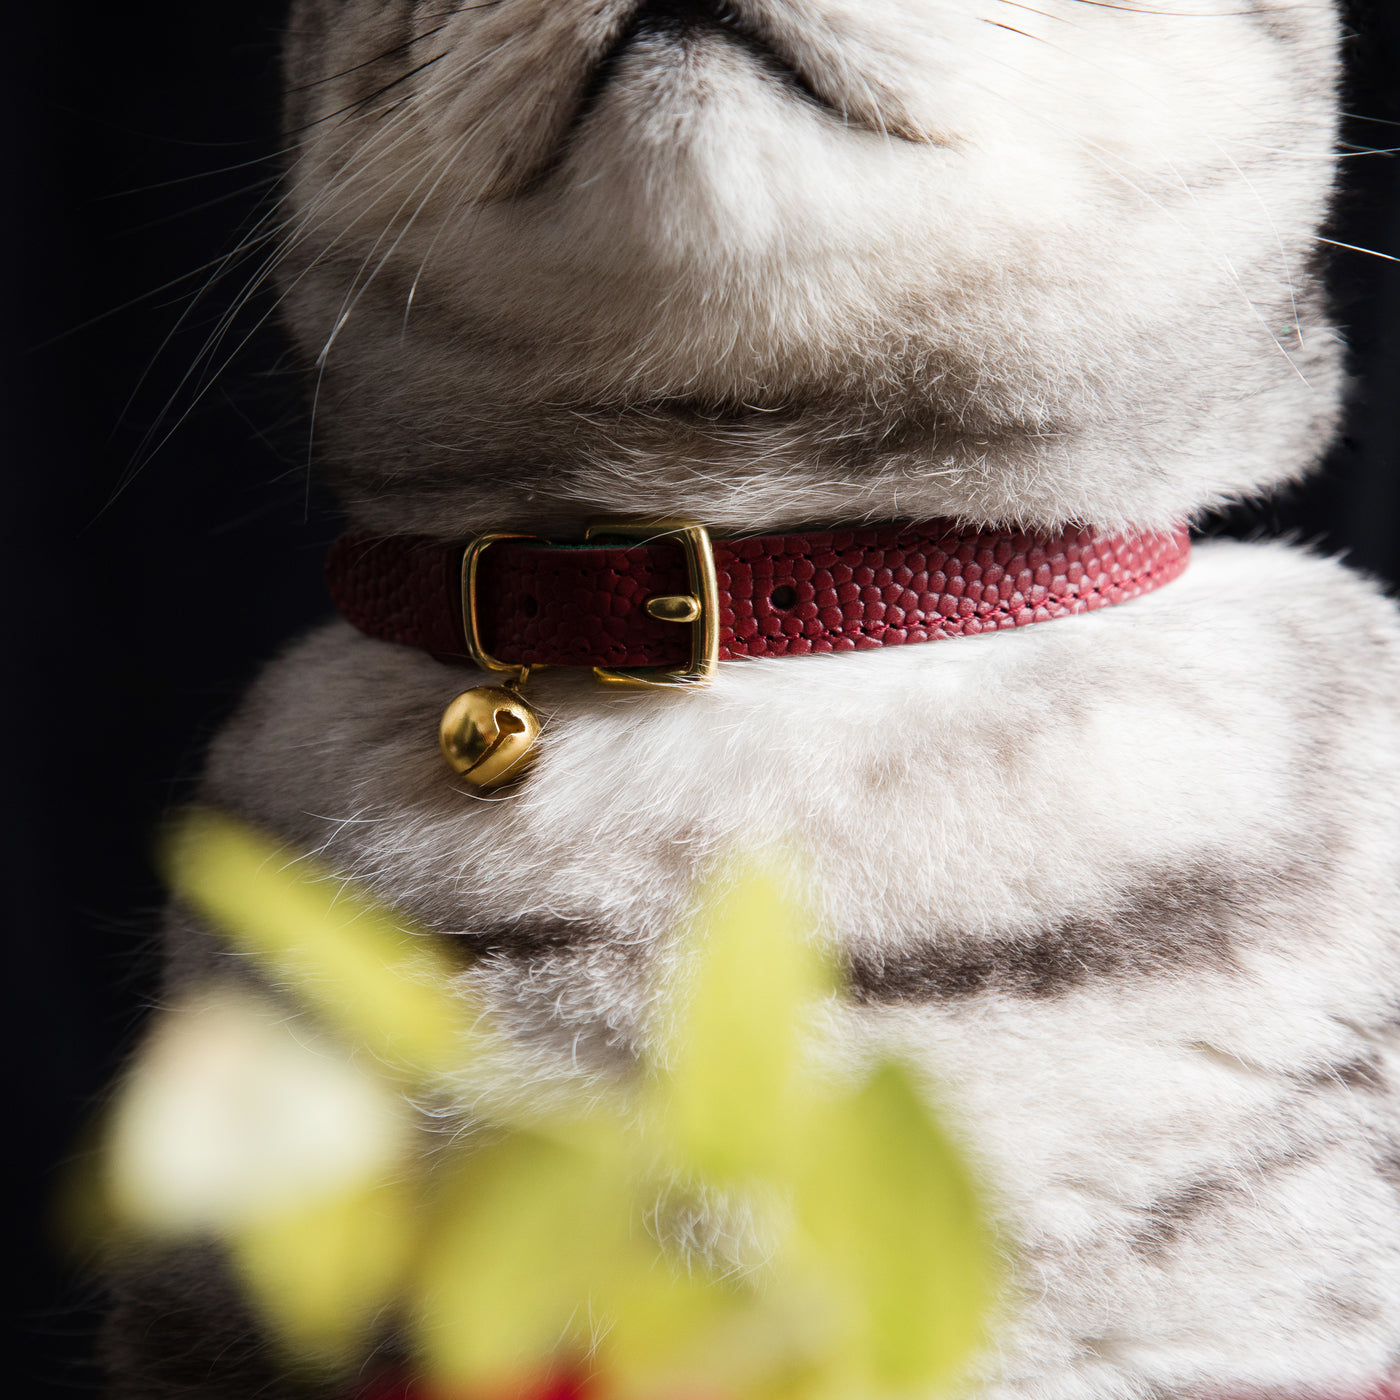 The 'Tsar' Caviar Cat Collar